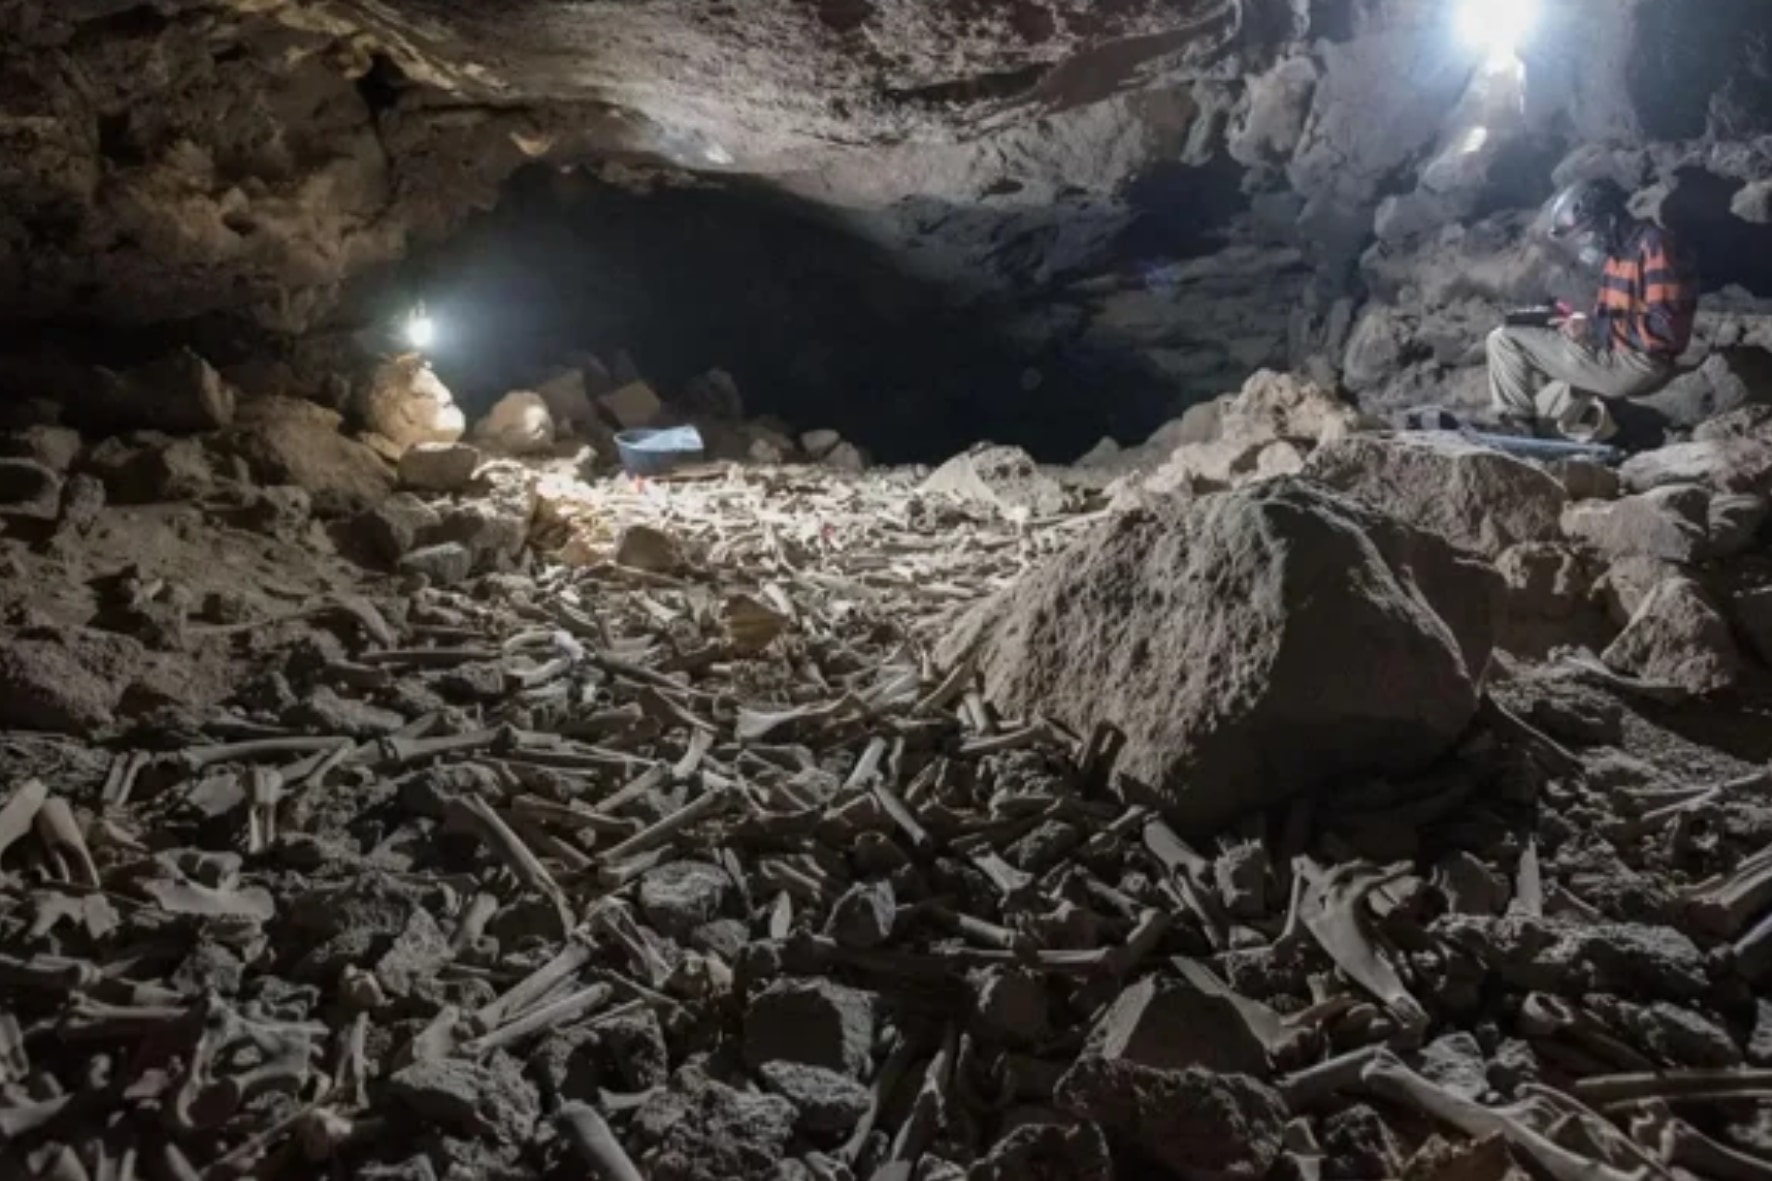 何十万もの白骨が散乱する 恐怖の洞窟 のヌシが明らかに ナゾロジー